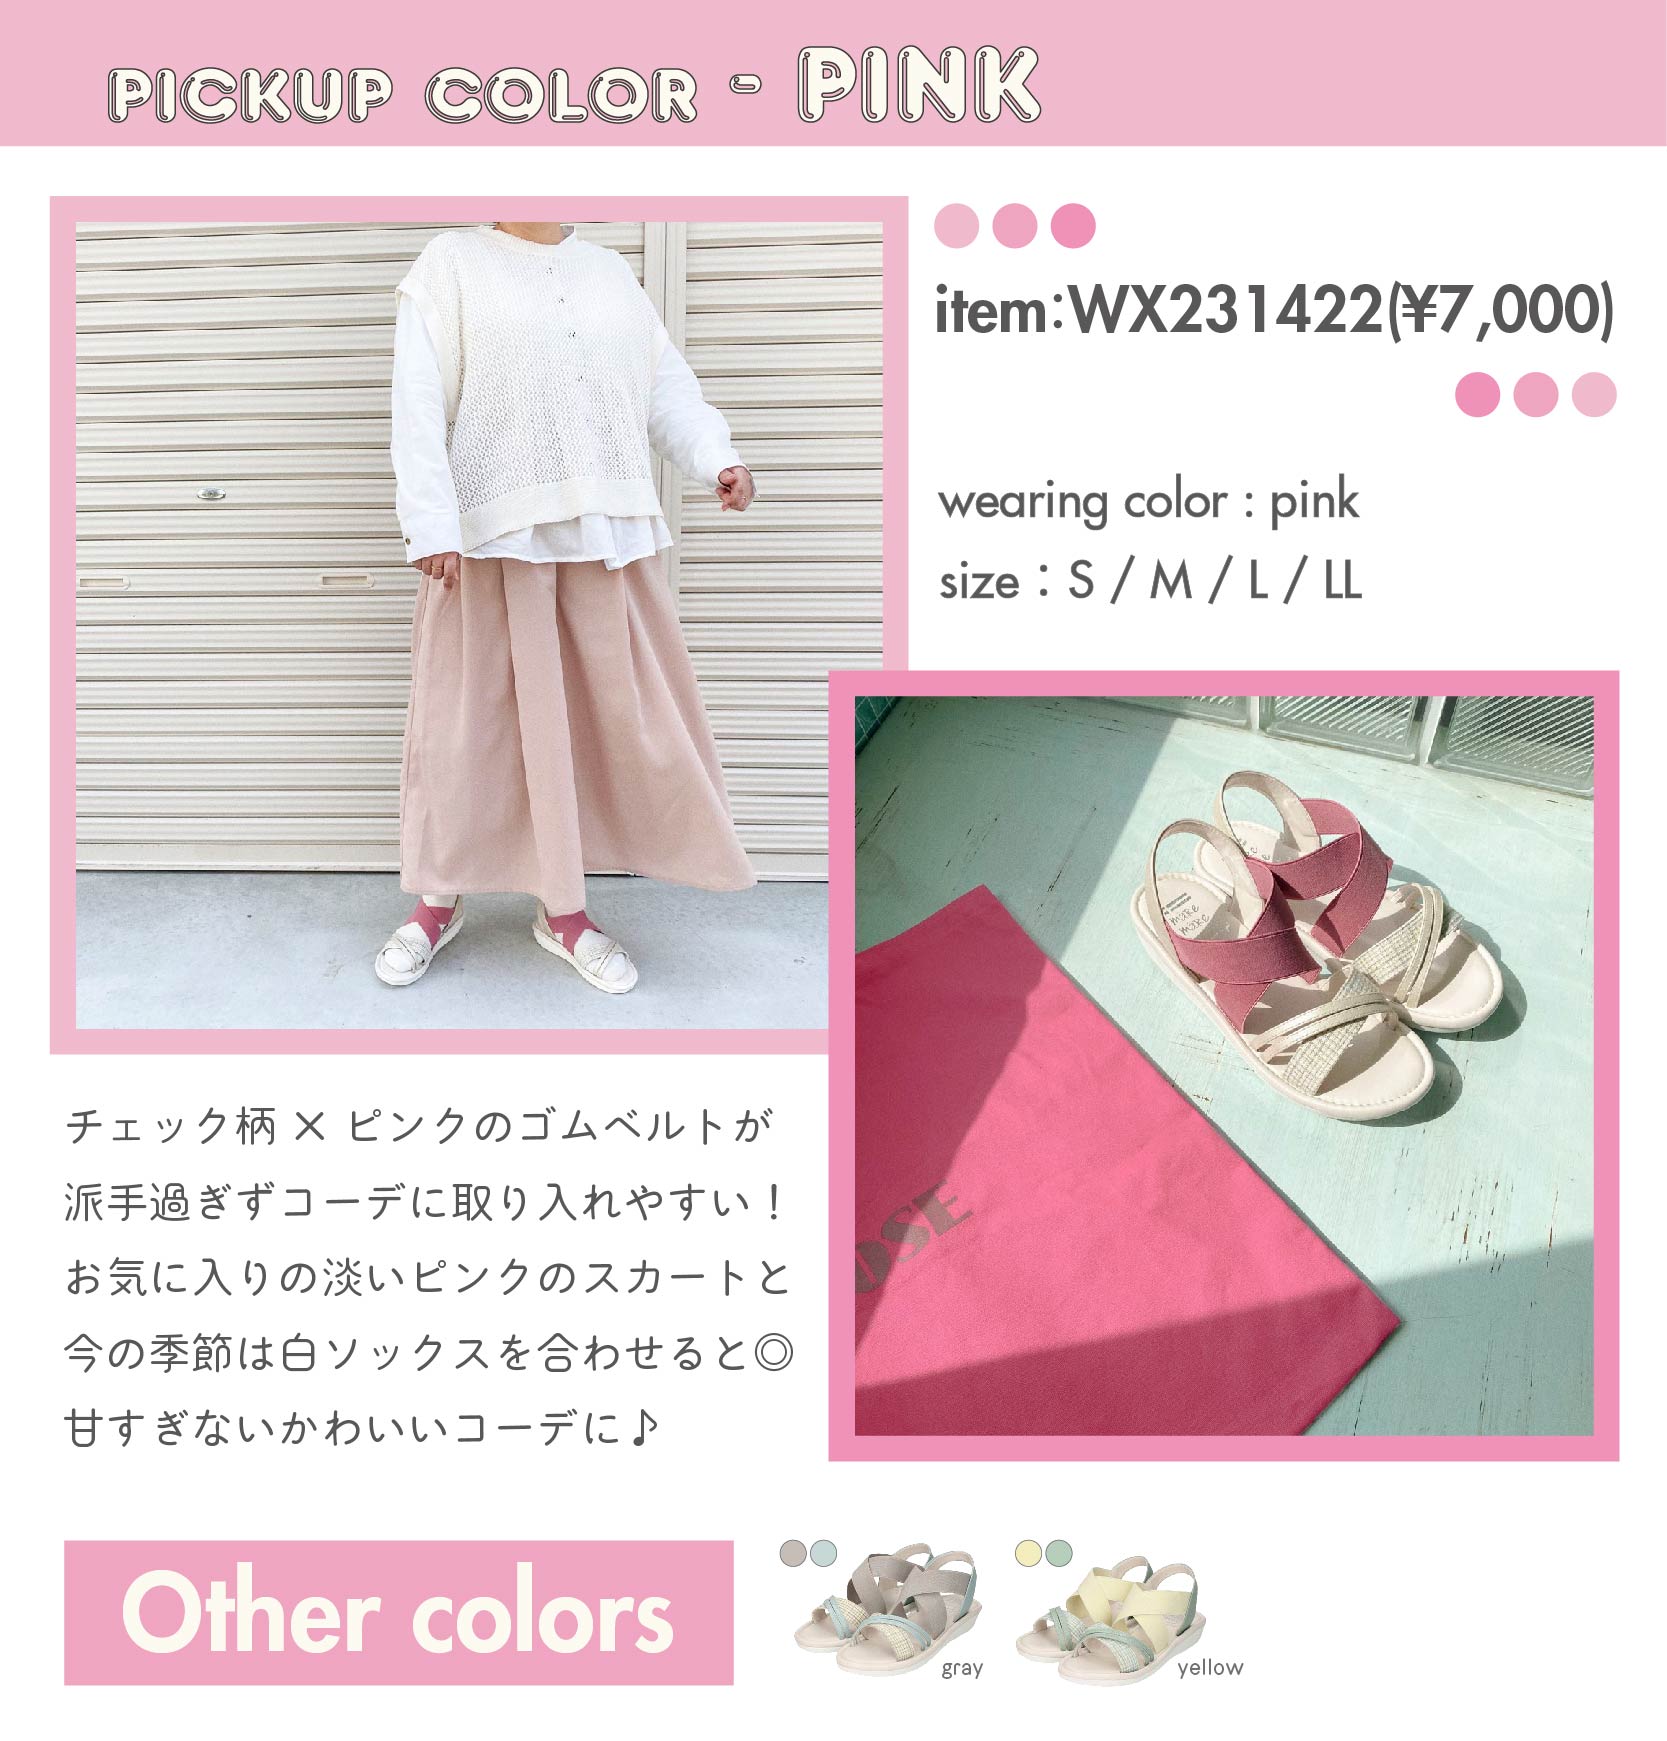 PICKUP COLOR-PINK　item：WX231422(¥7,000) color：pink 　size：S / M / L / LL　チェック柄×ピンクのゴムベルトが 派手過ぎずコーデに取り入れやすい！ お気に入りの淡いピンクのパンツと、 今の季節は白ソックスを合わせると◎ 甘すぎないかわいいコーデに♪